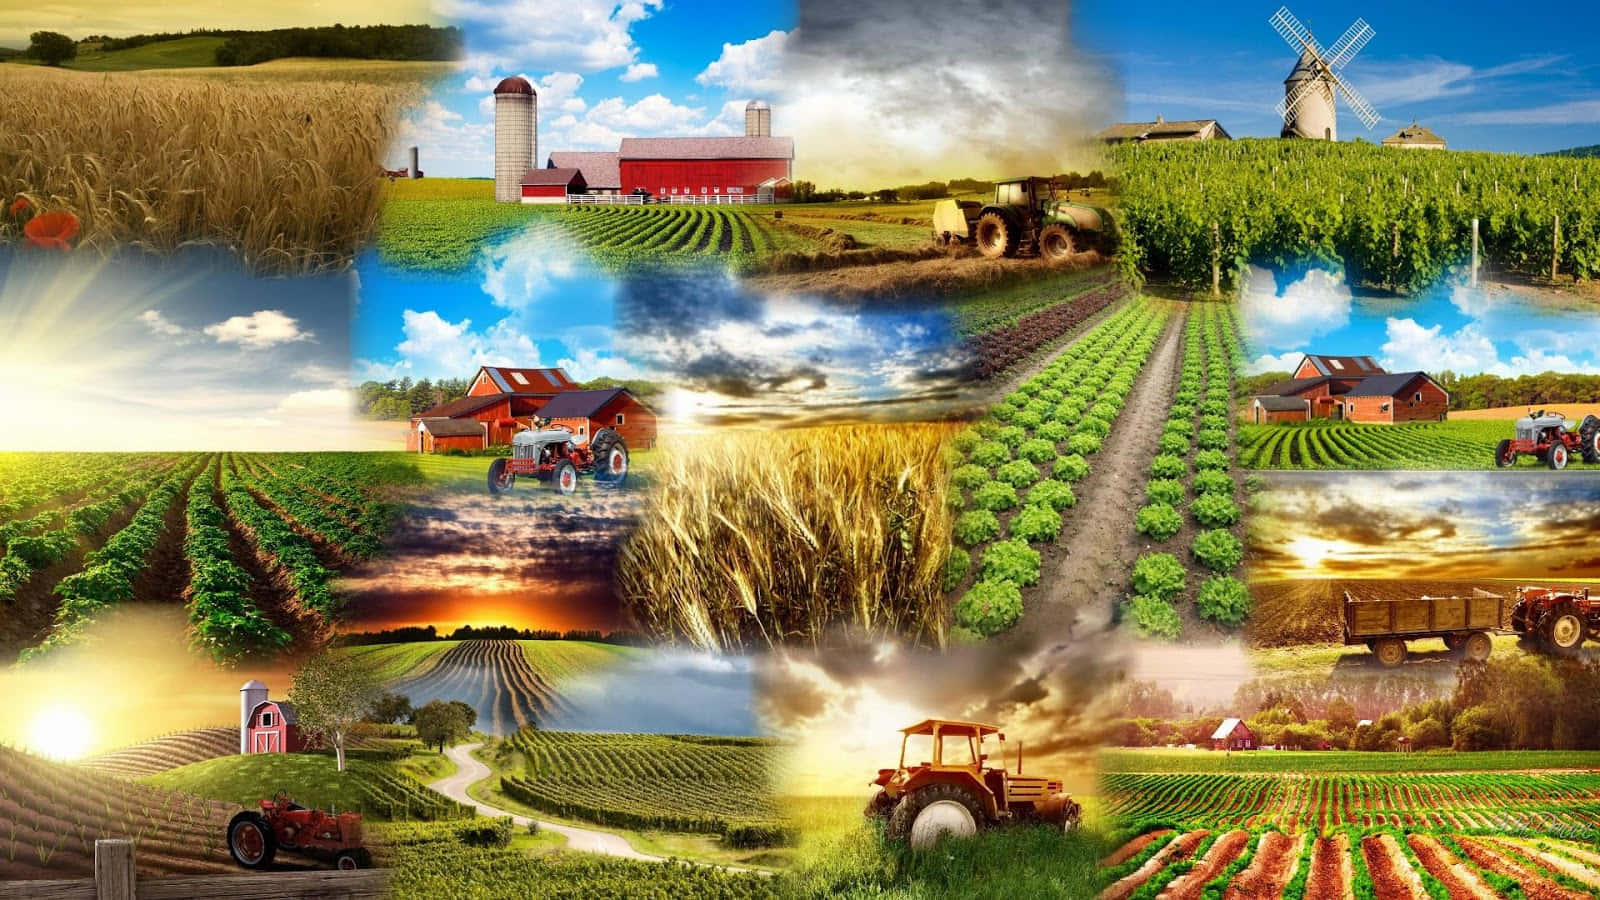 Umacolagem De Fotos De Fazendas E Equipamentos Agrícolas